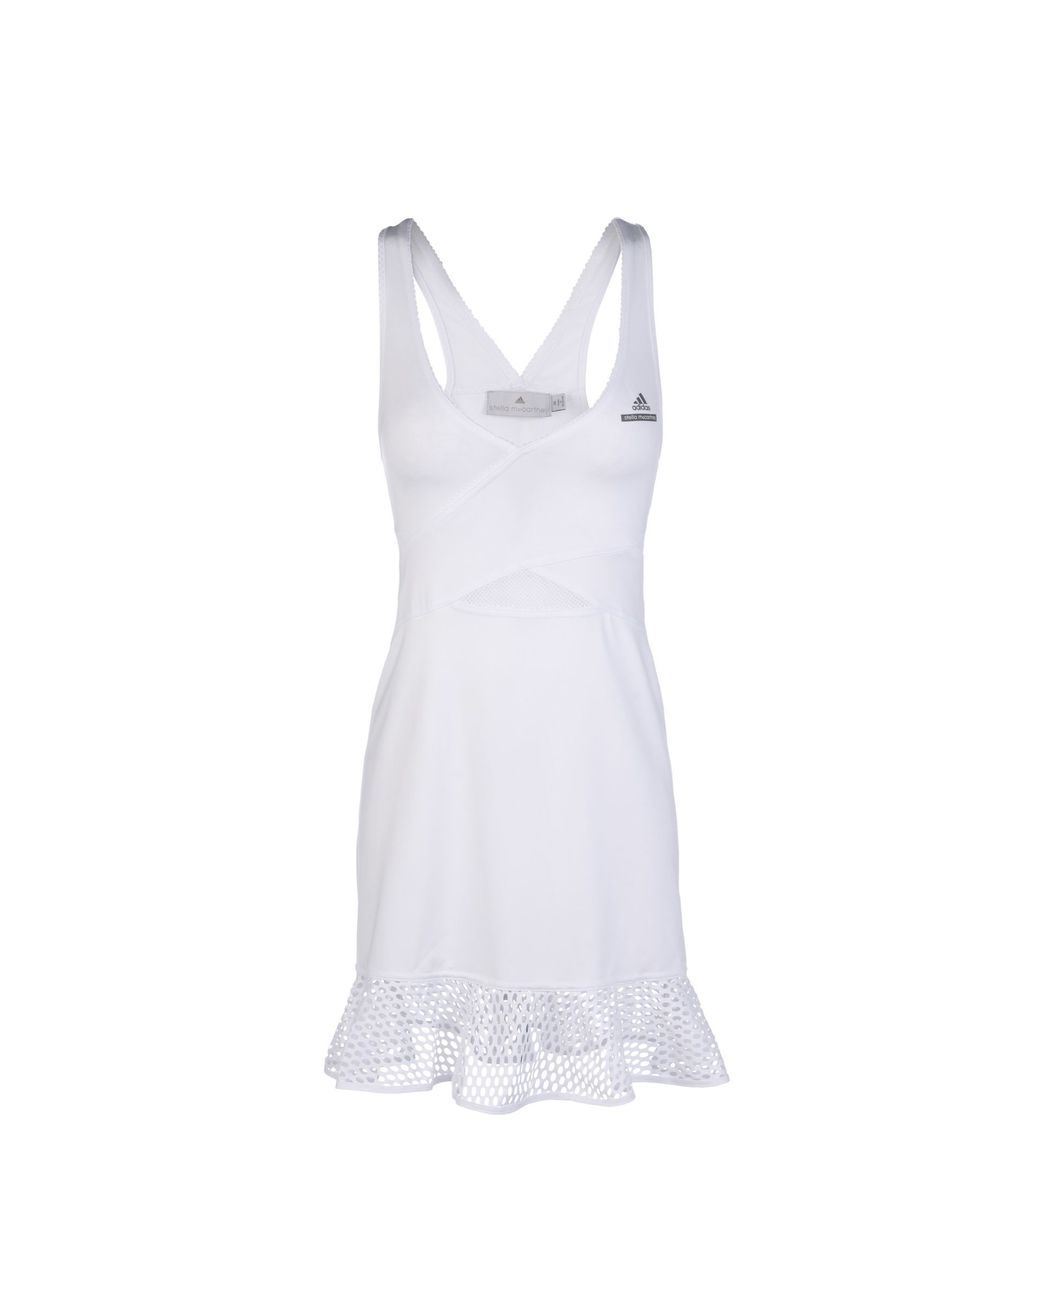 adidas By Stella McCartney White Barricade Tennis Dress | Lyst Canada